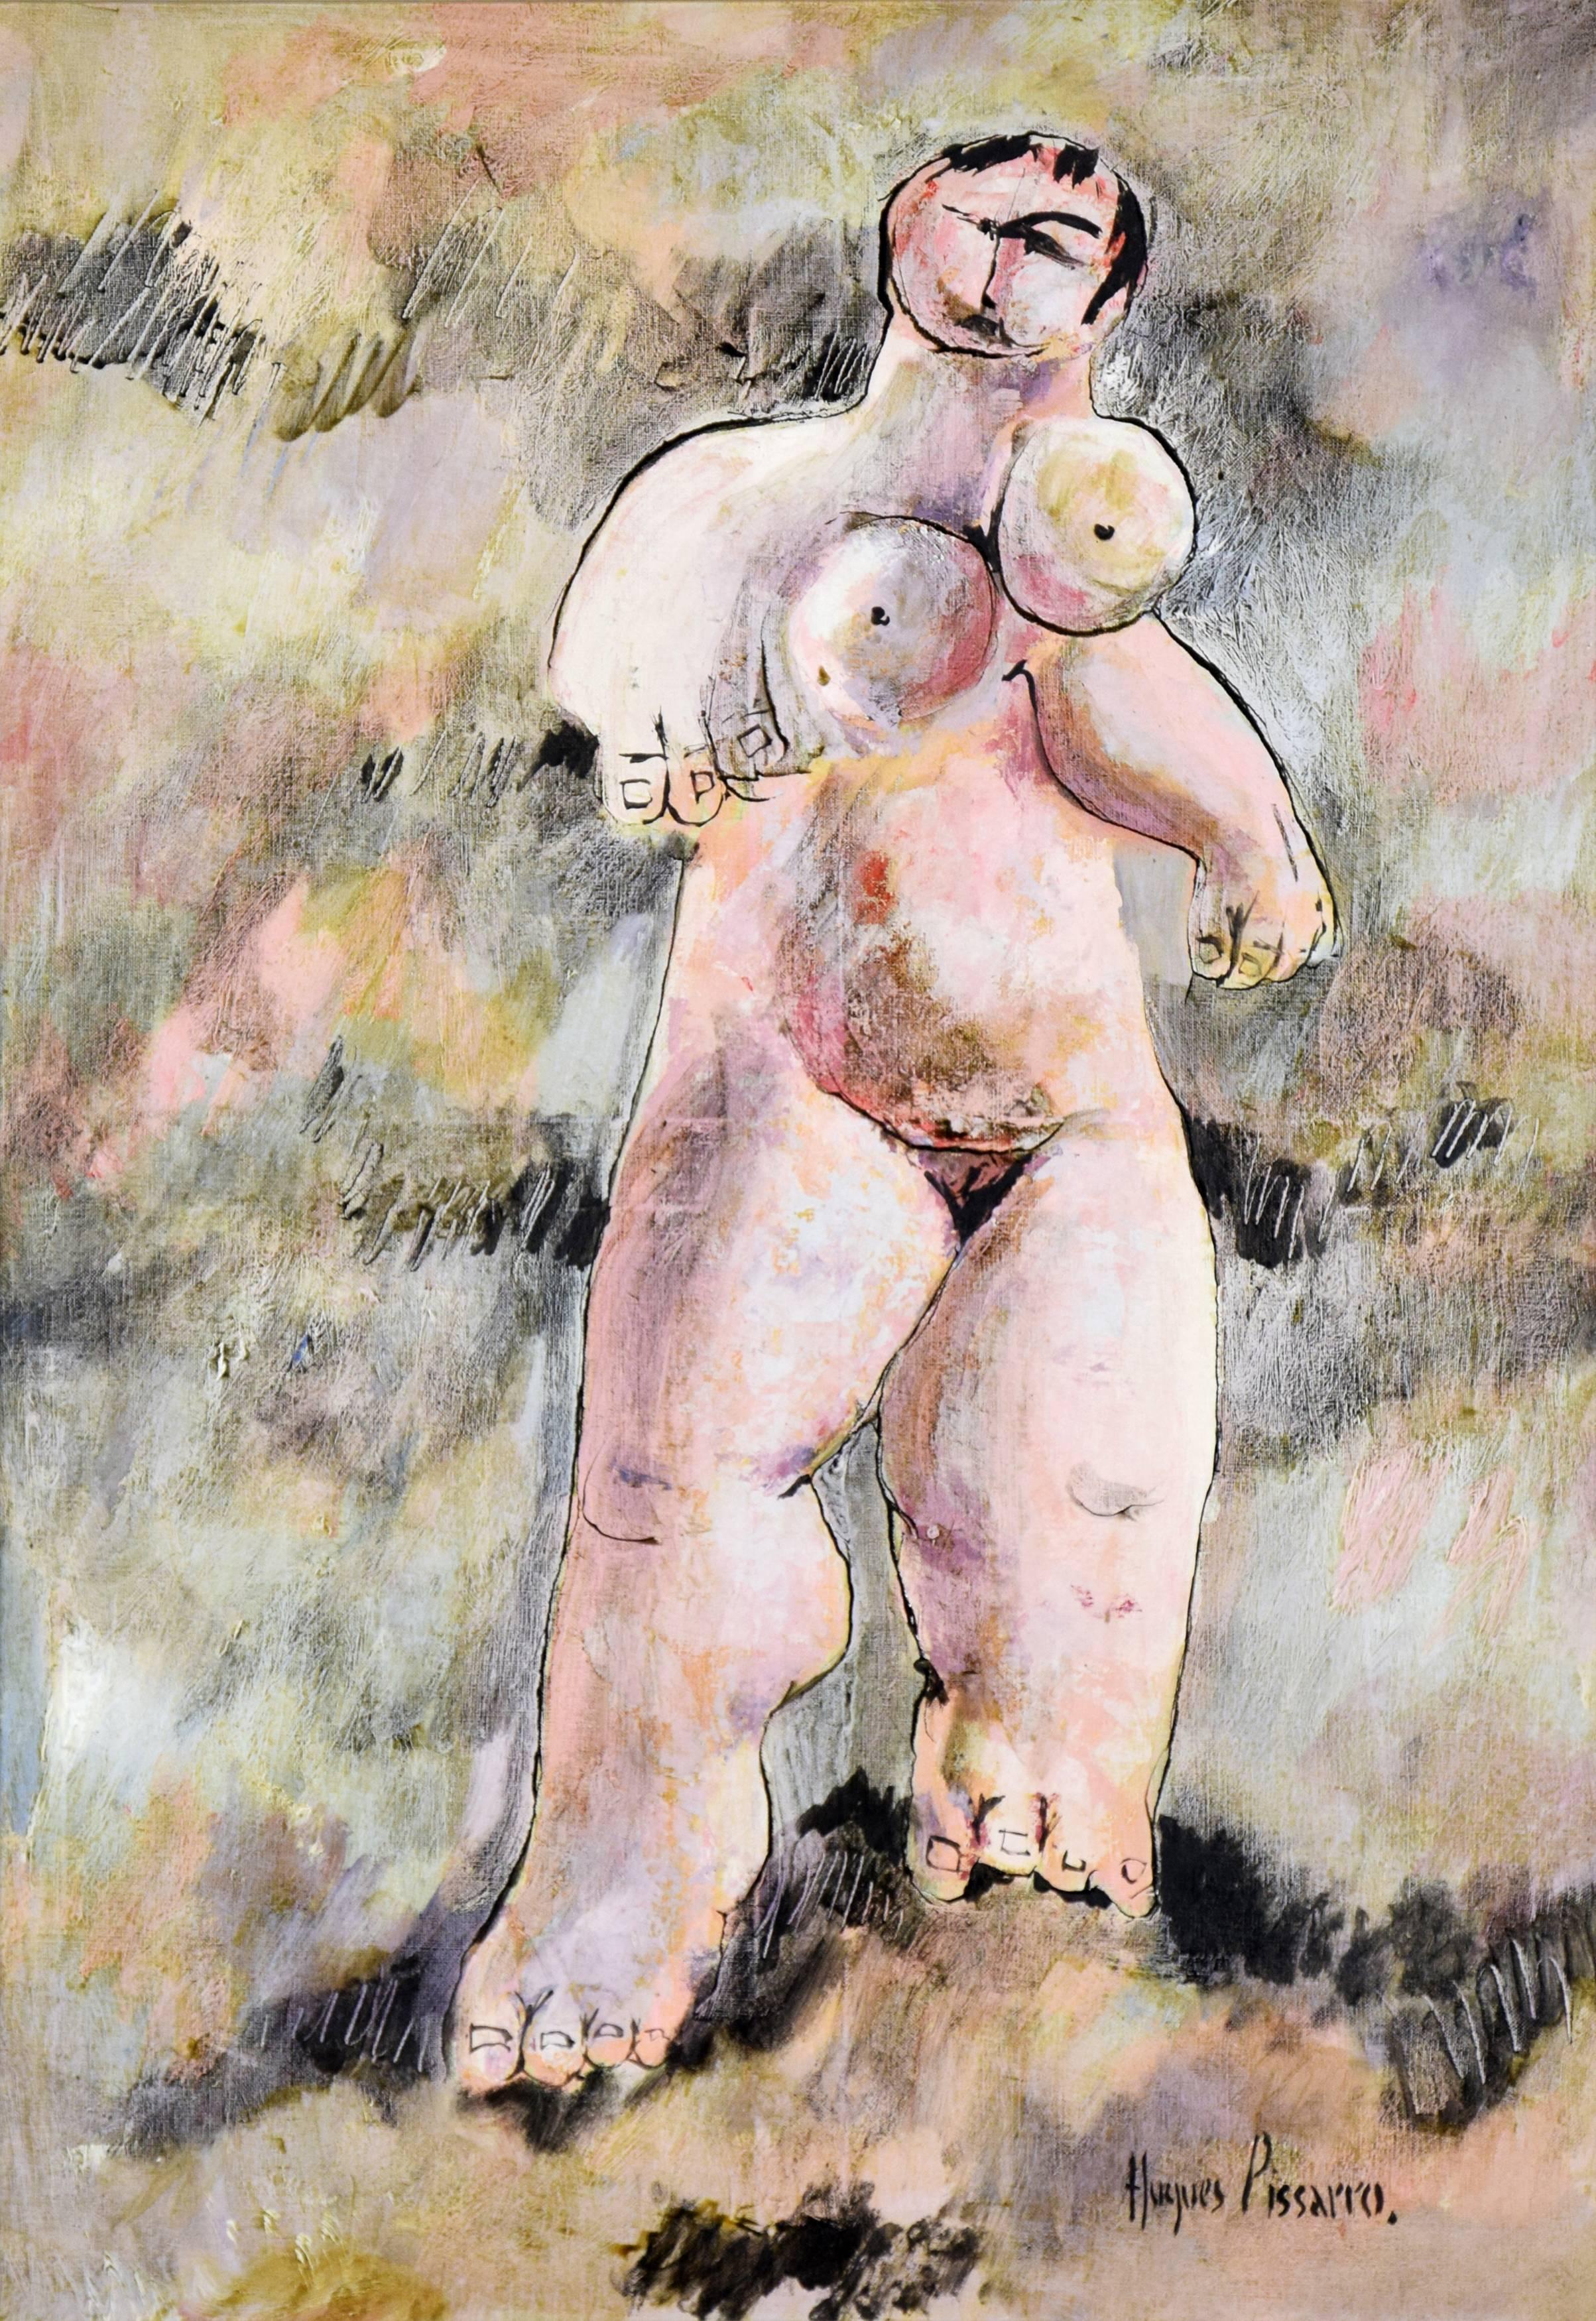 Hughes Claude Pissarro Nude Painting – Nudefarbenes Gemälde, menschliche Figur, Öl auf Leinwand, Kunst von HUGUES PISSARRO